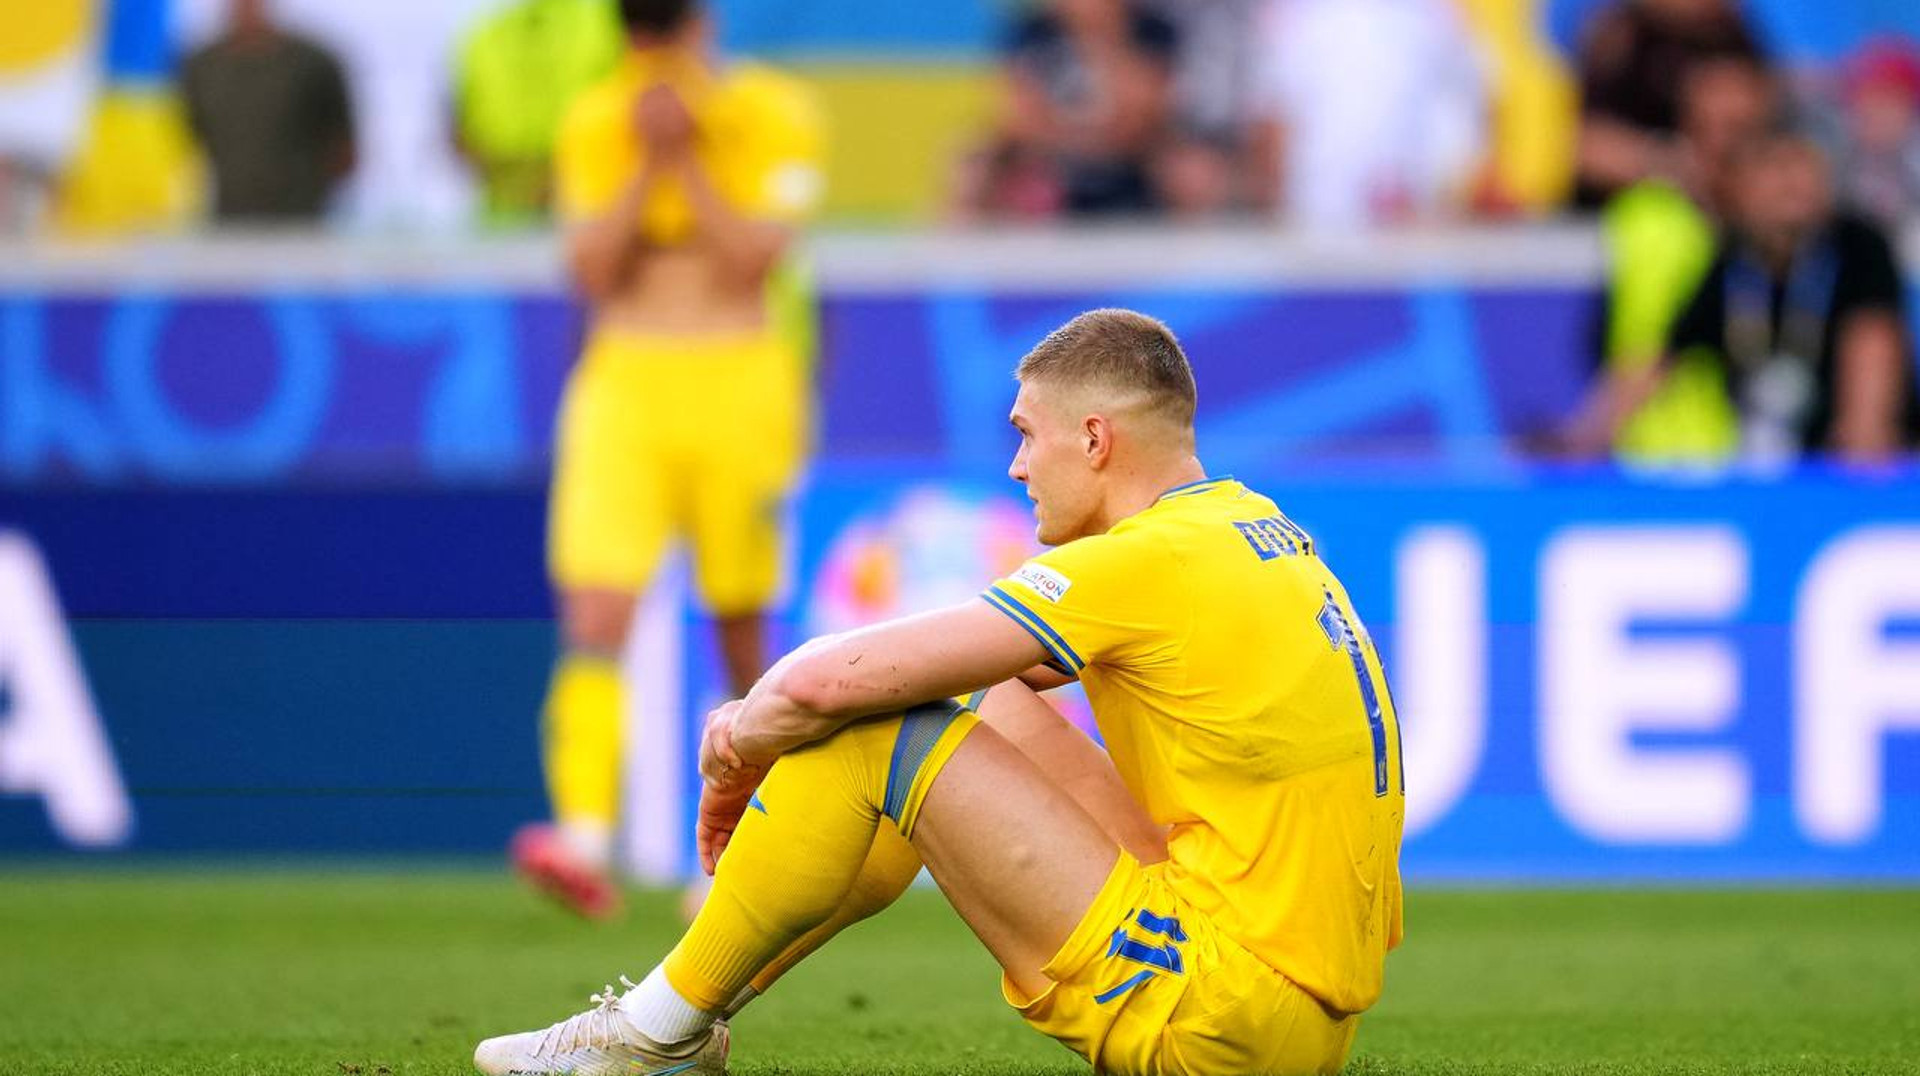 Драматическая развязка испорченных усилий. 5 выводов из матча Украина — Бельгия